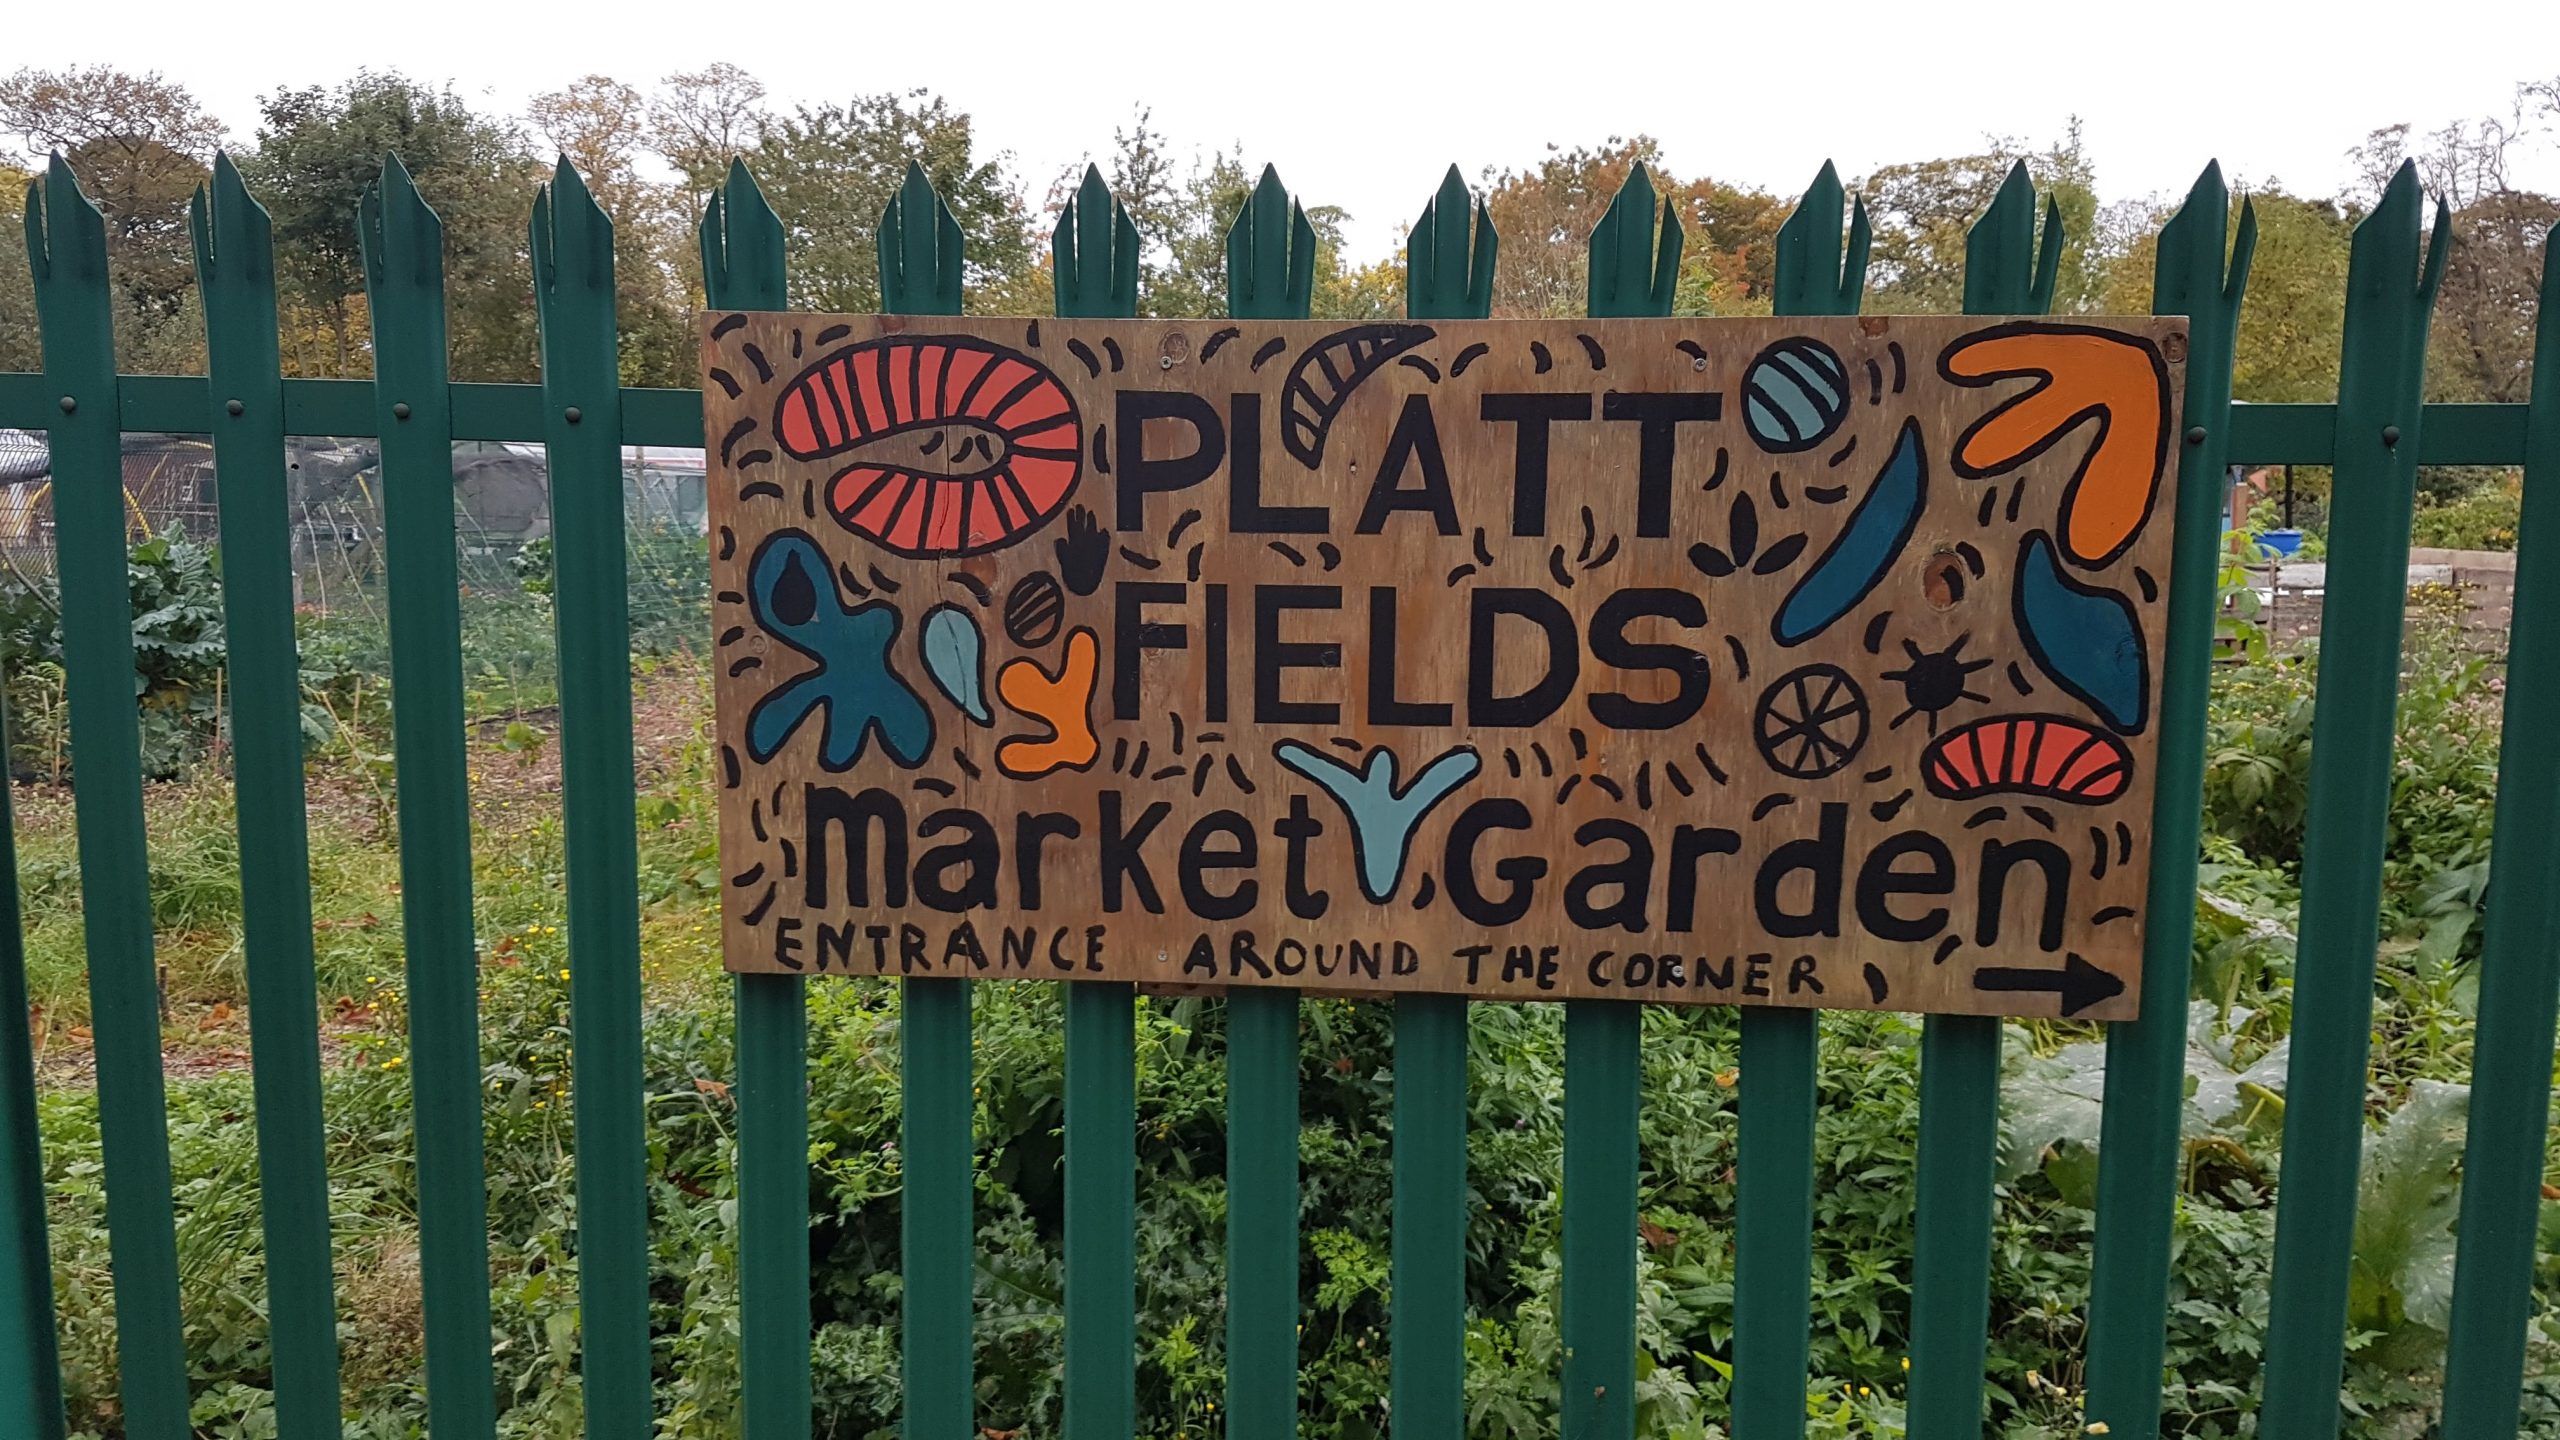 A wooden sign on a fence advertising Platt Fields Market Garden